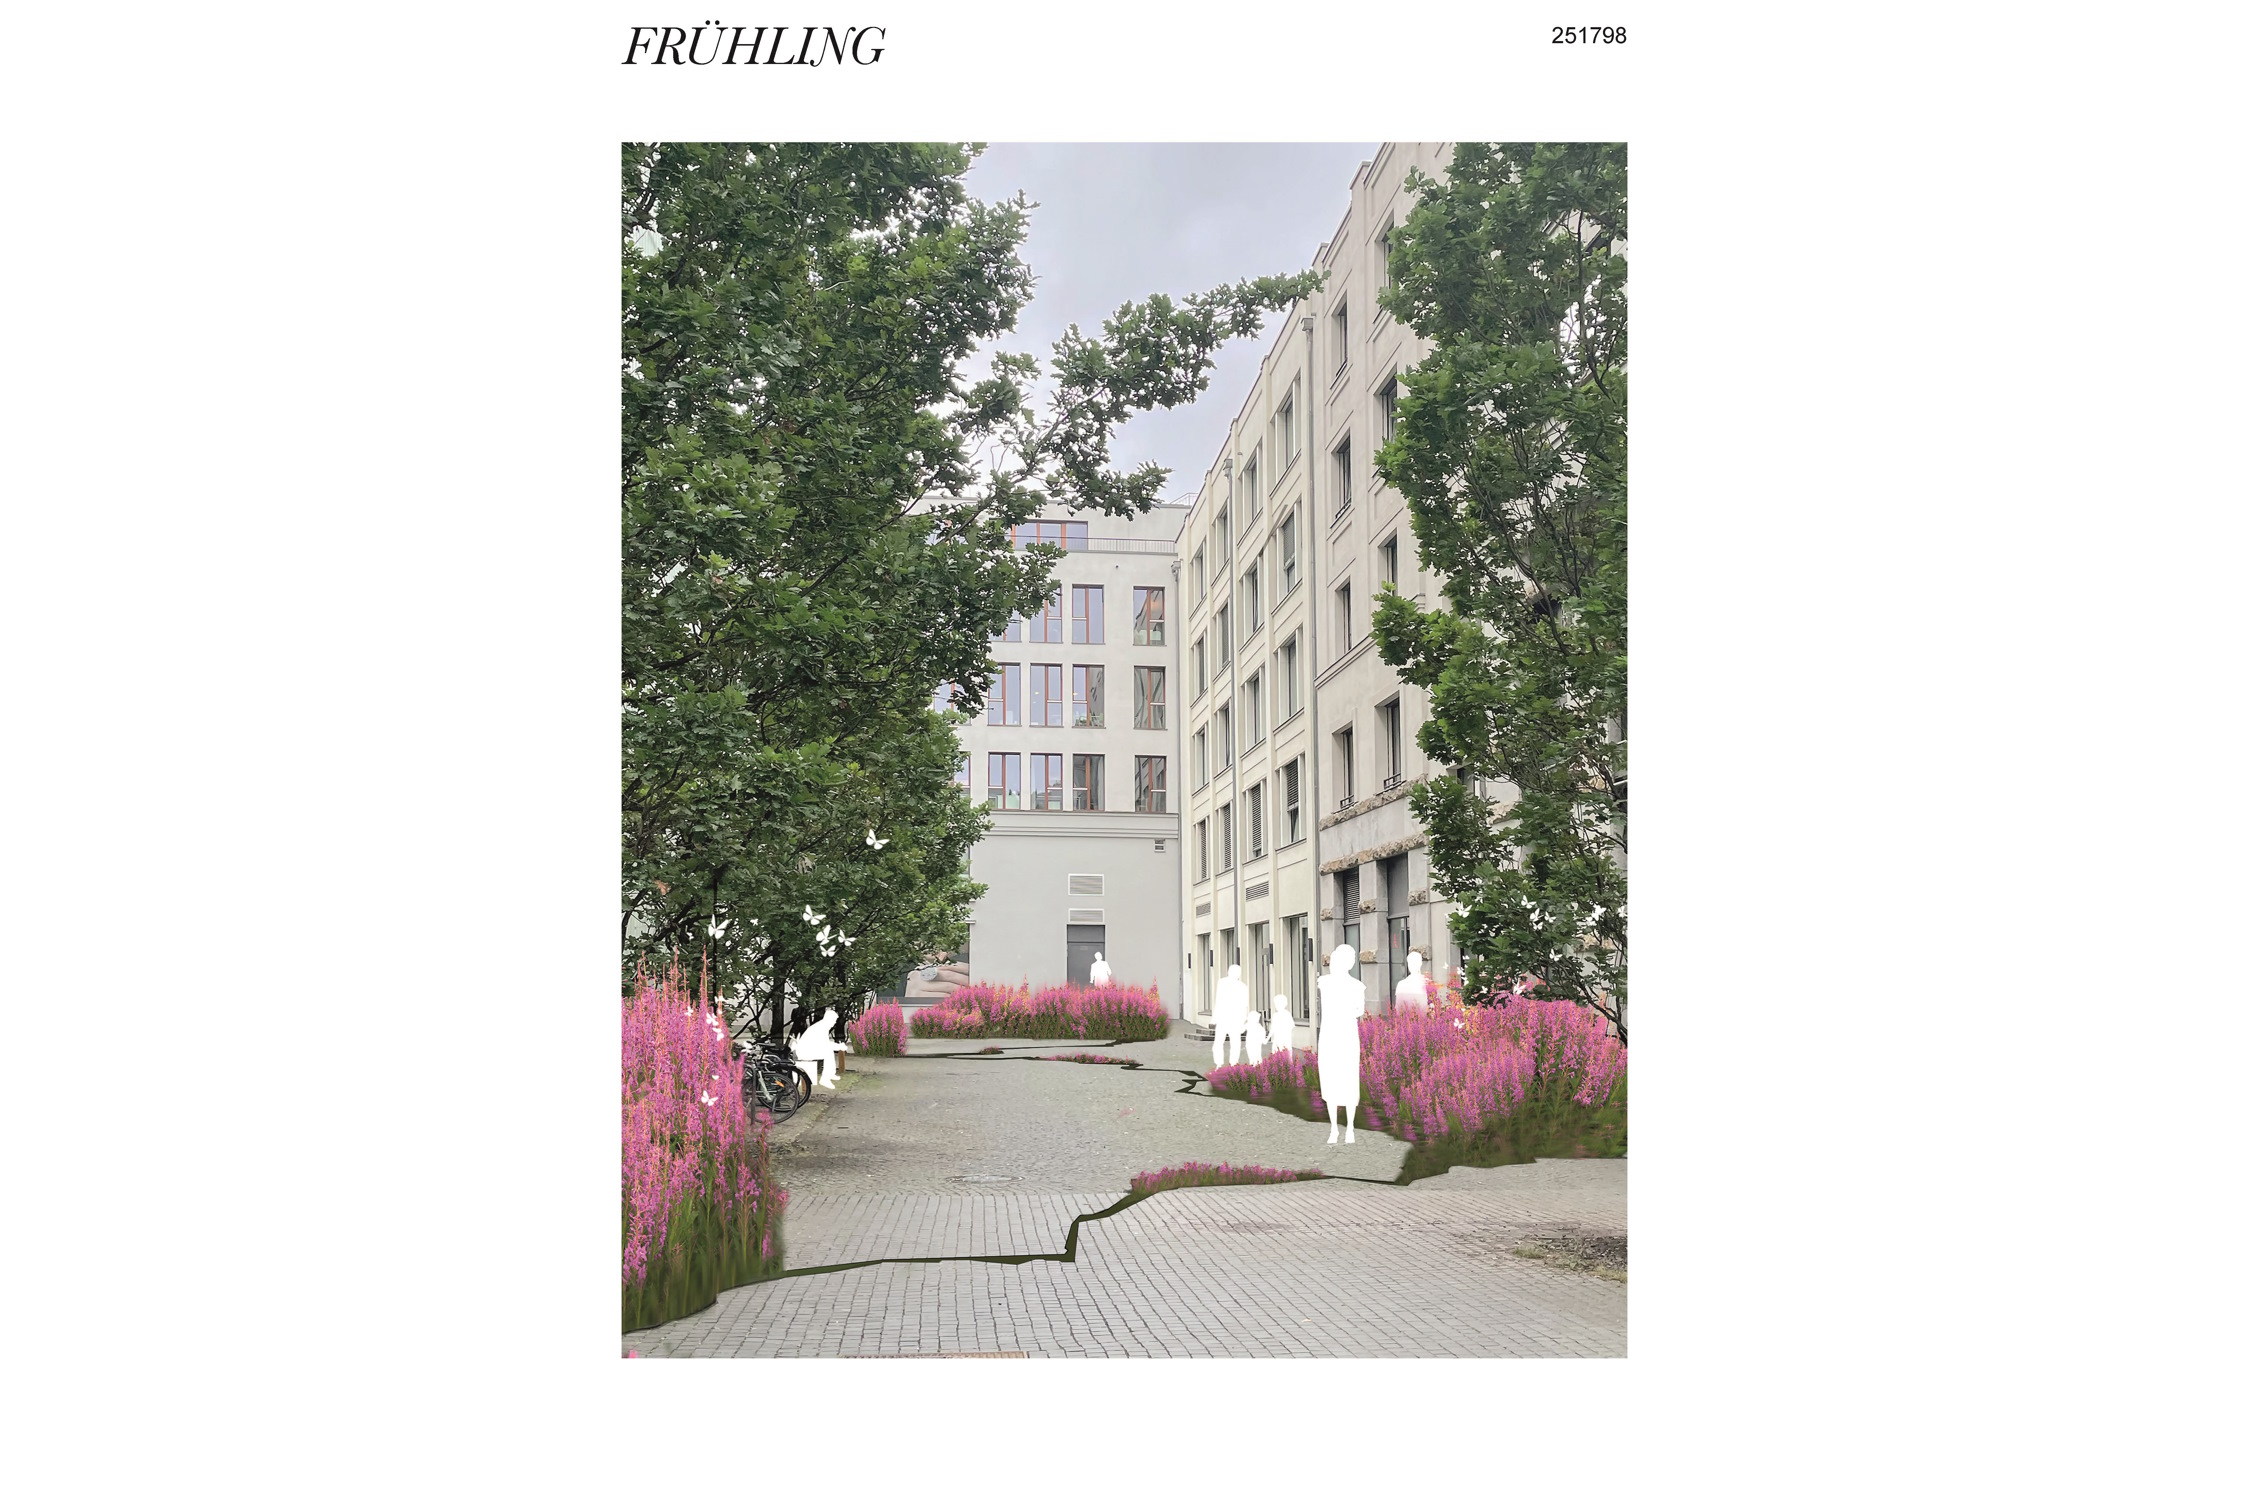 Nina Schuiki/ Entwurfszeichnung “Frühling““